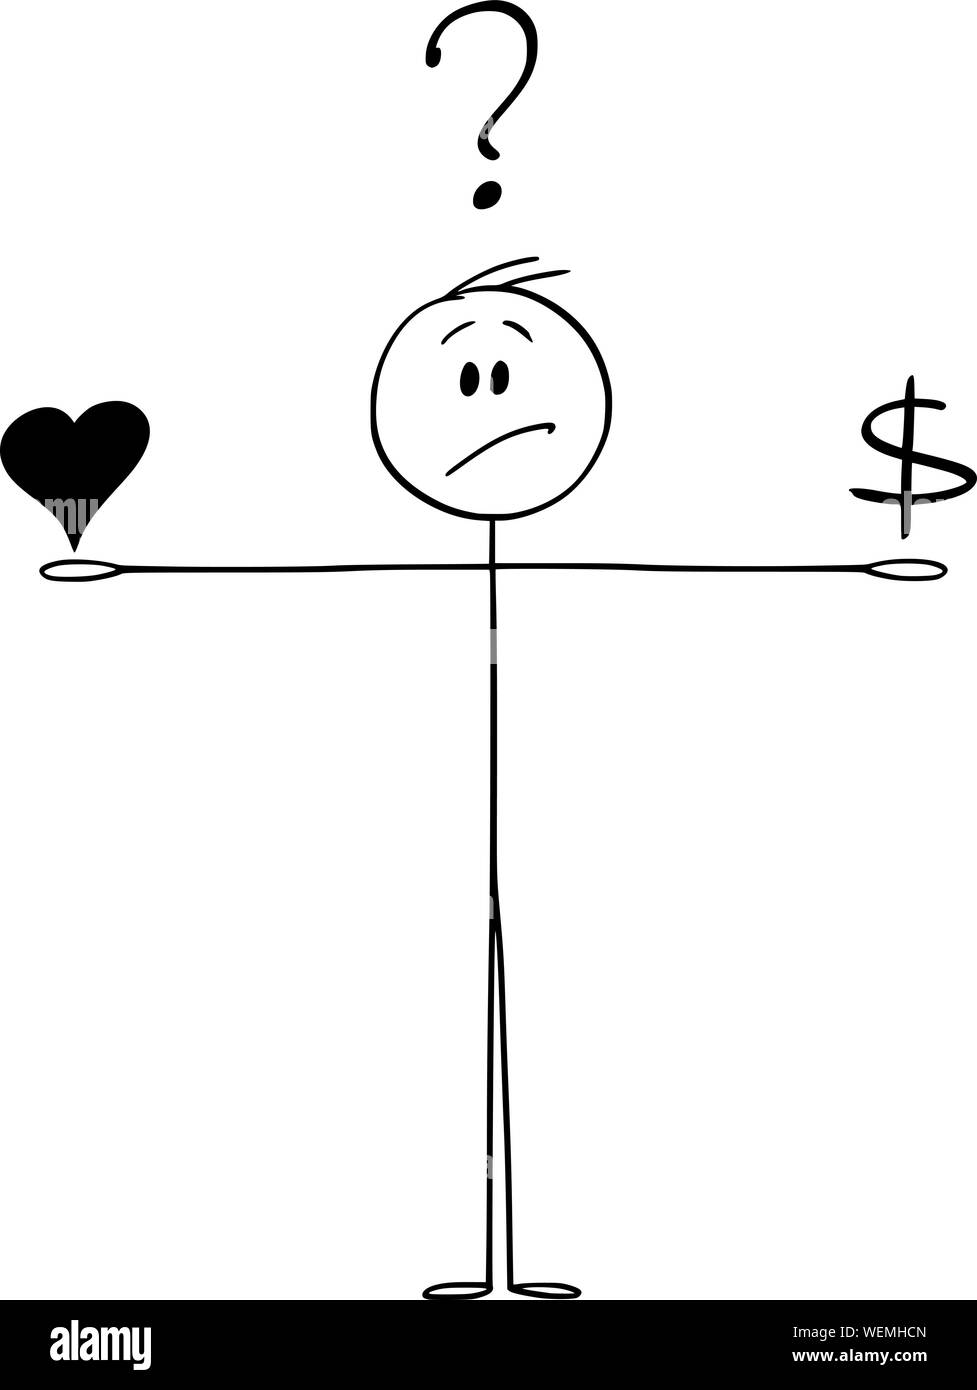 Vector cartoon stick figura disegno illustrazione concettuale dell'uomo equilibratura di amore e di denaro e prendendo in considerazione. Focolare e simboli di dollaro sulla scala. Illustrazione Vettoriale